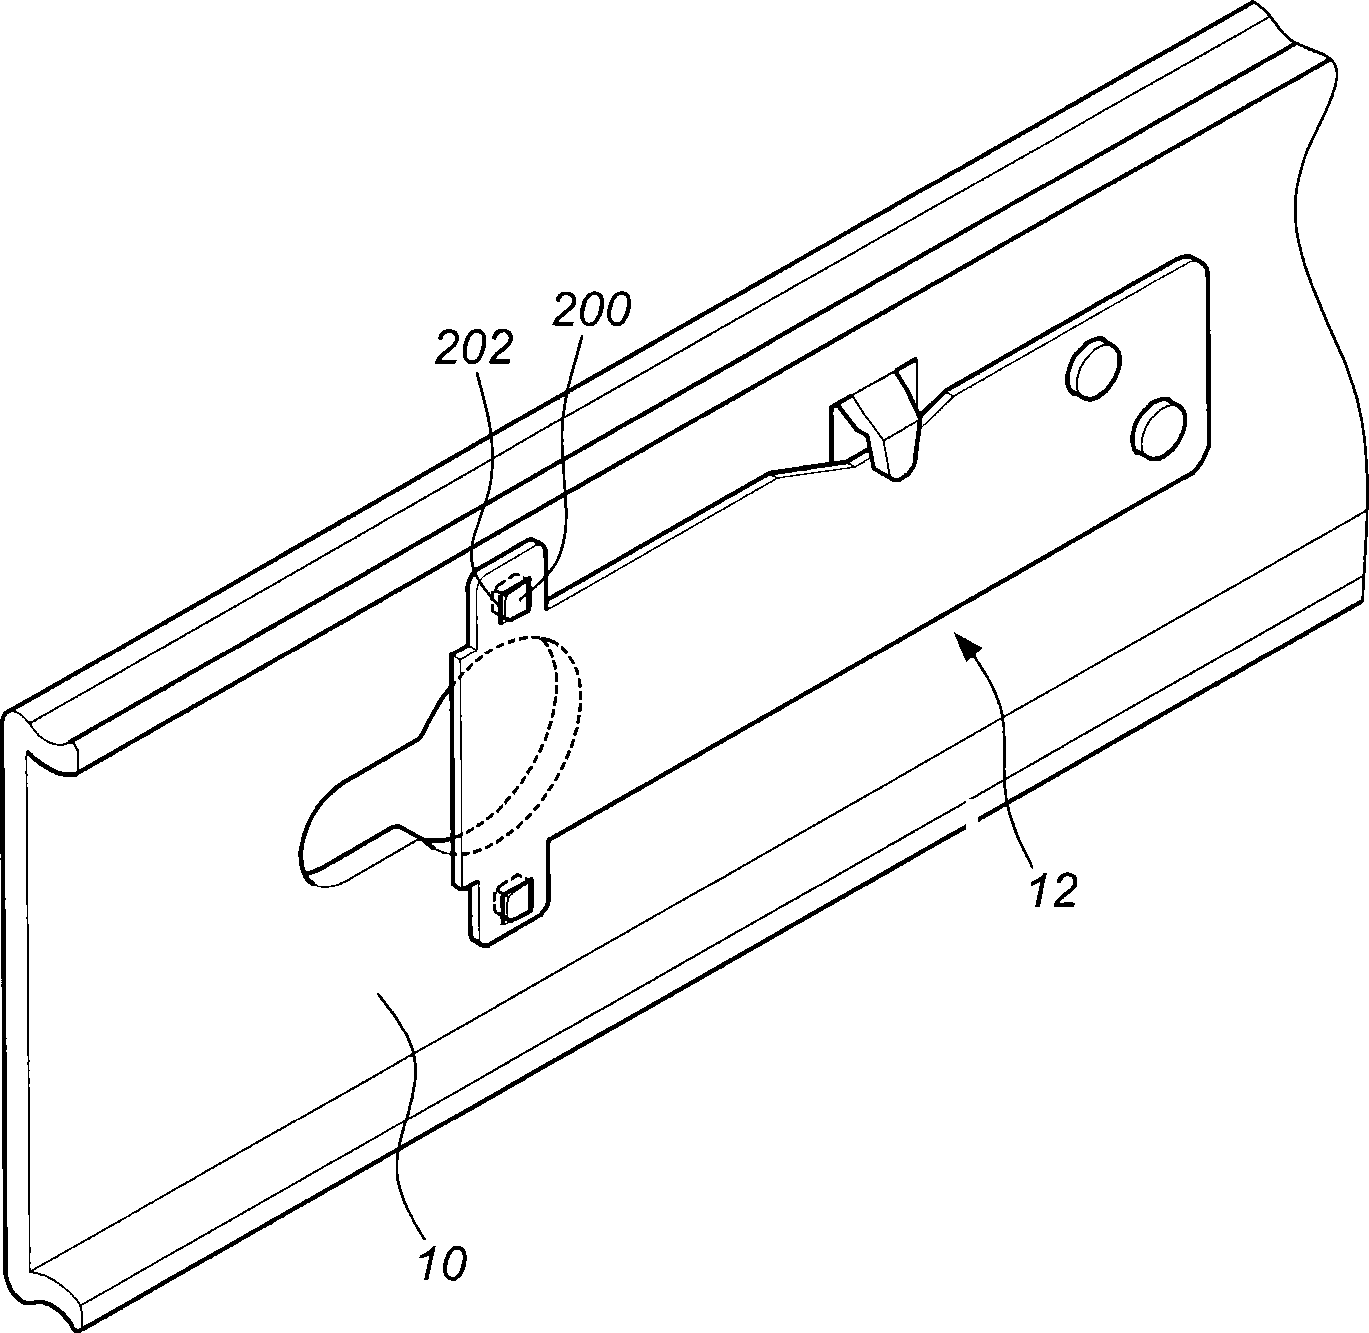 Quick-detachment positioning structure for rail component